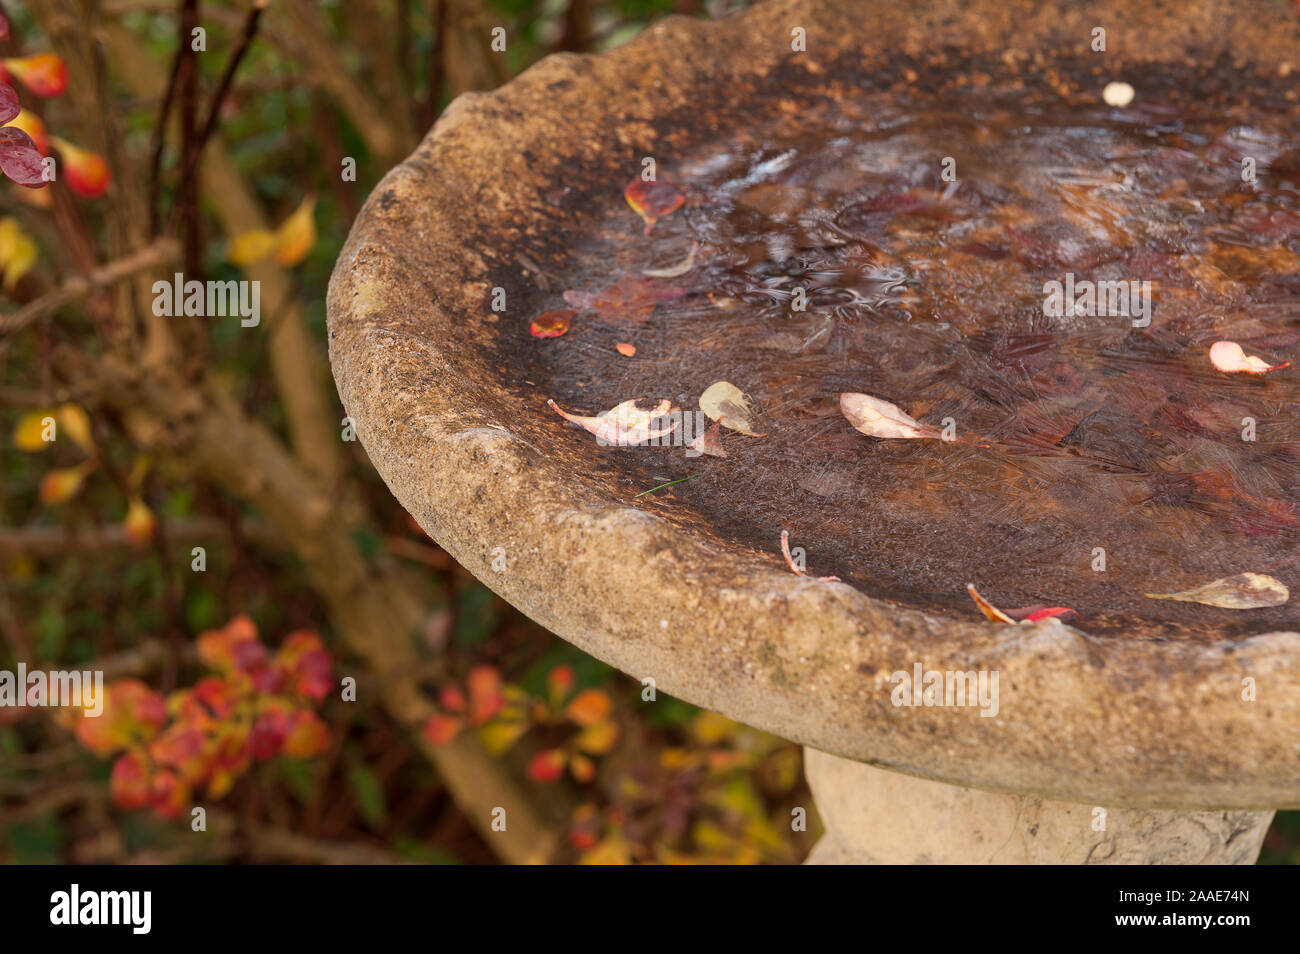 Gefrorenes Wasser in Beton Steine vogel Badewanne, ein Zeichen von Winter und frostig, Frost, Härten für die Tierwelt, mit Berberis thunbergii Strauch Stockfoto